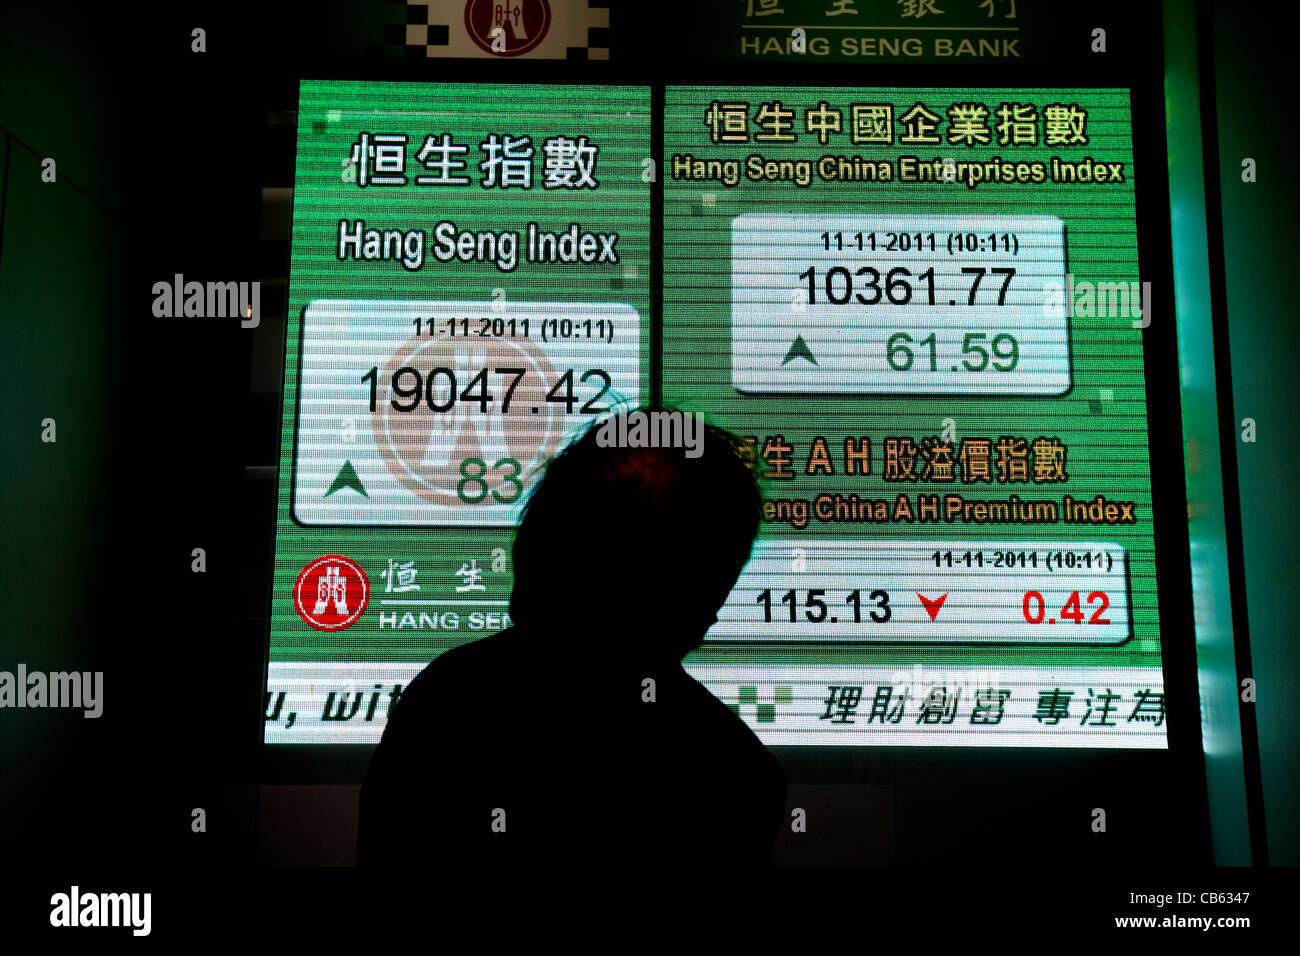 chinesischer Geschäftsmann Blick auf Hong Kong Aktienindex Bildschirm am Hang Seng Bank hq zentraler Bezirk, Insel Hongkong, Sonderverwaltungsregion Hongkong, Stockfoto